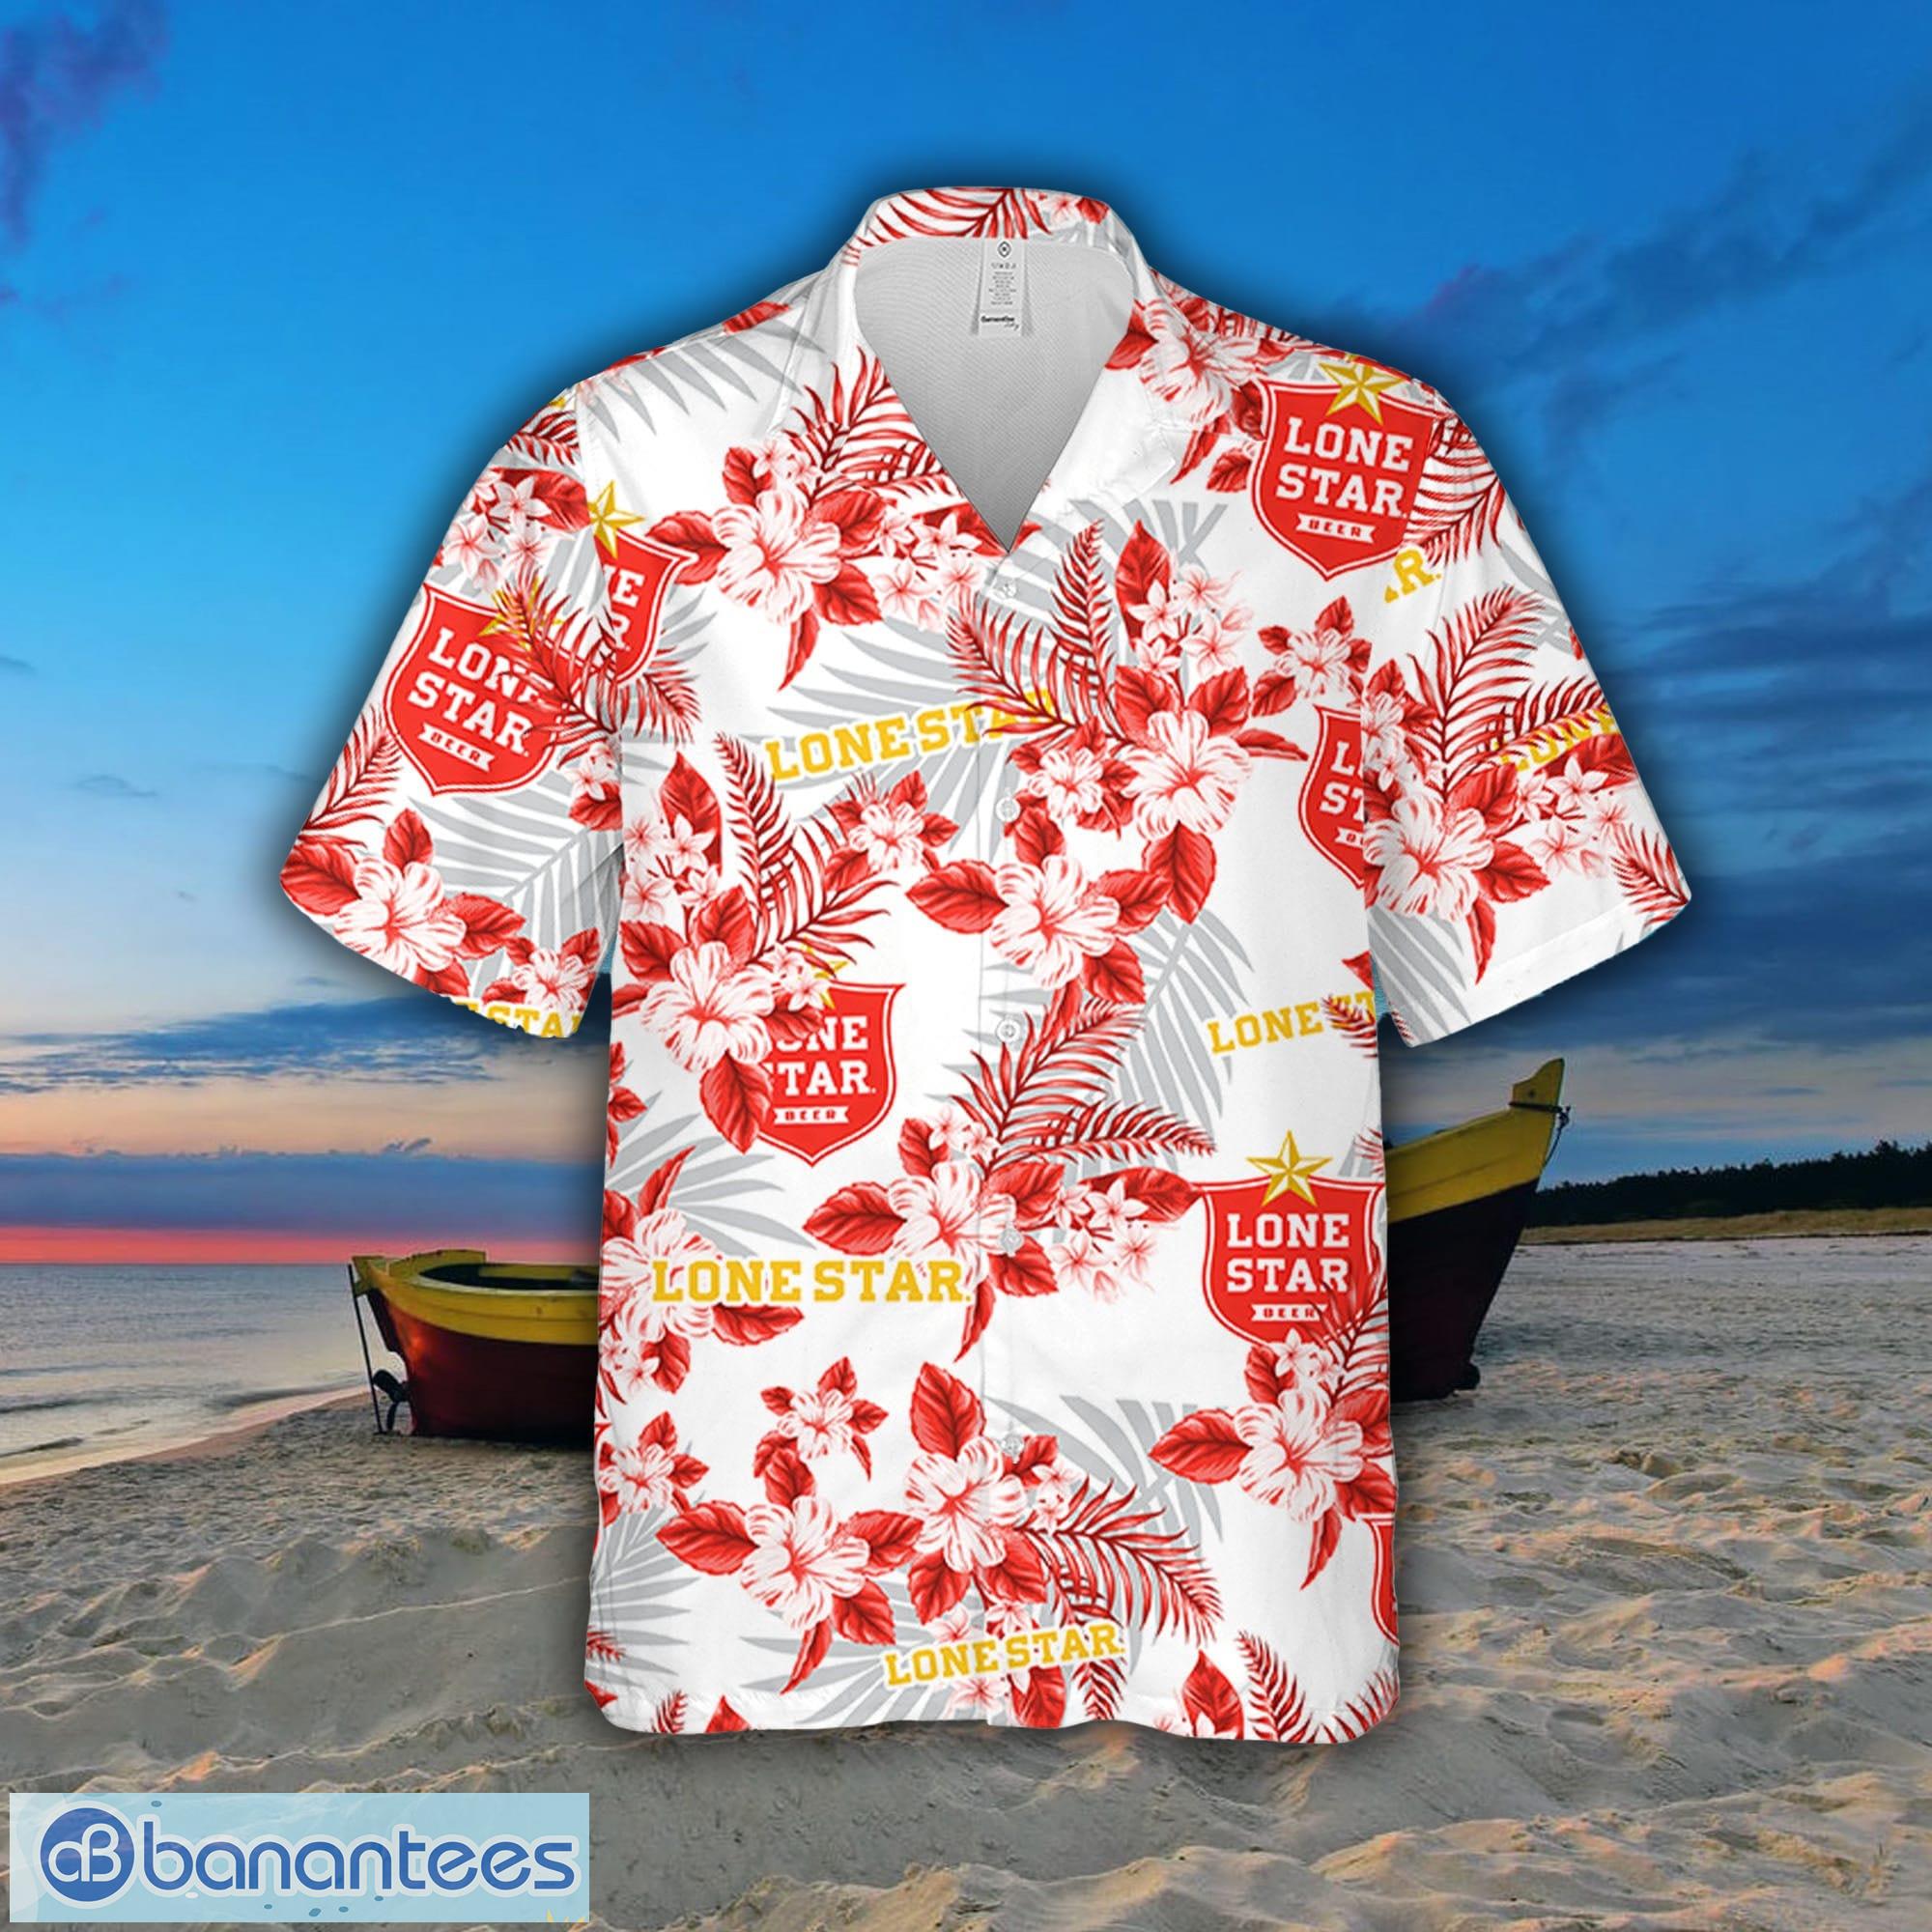 Coors Light Hawaiian Shirt Sea Island Pattern Beach Gift For Friend